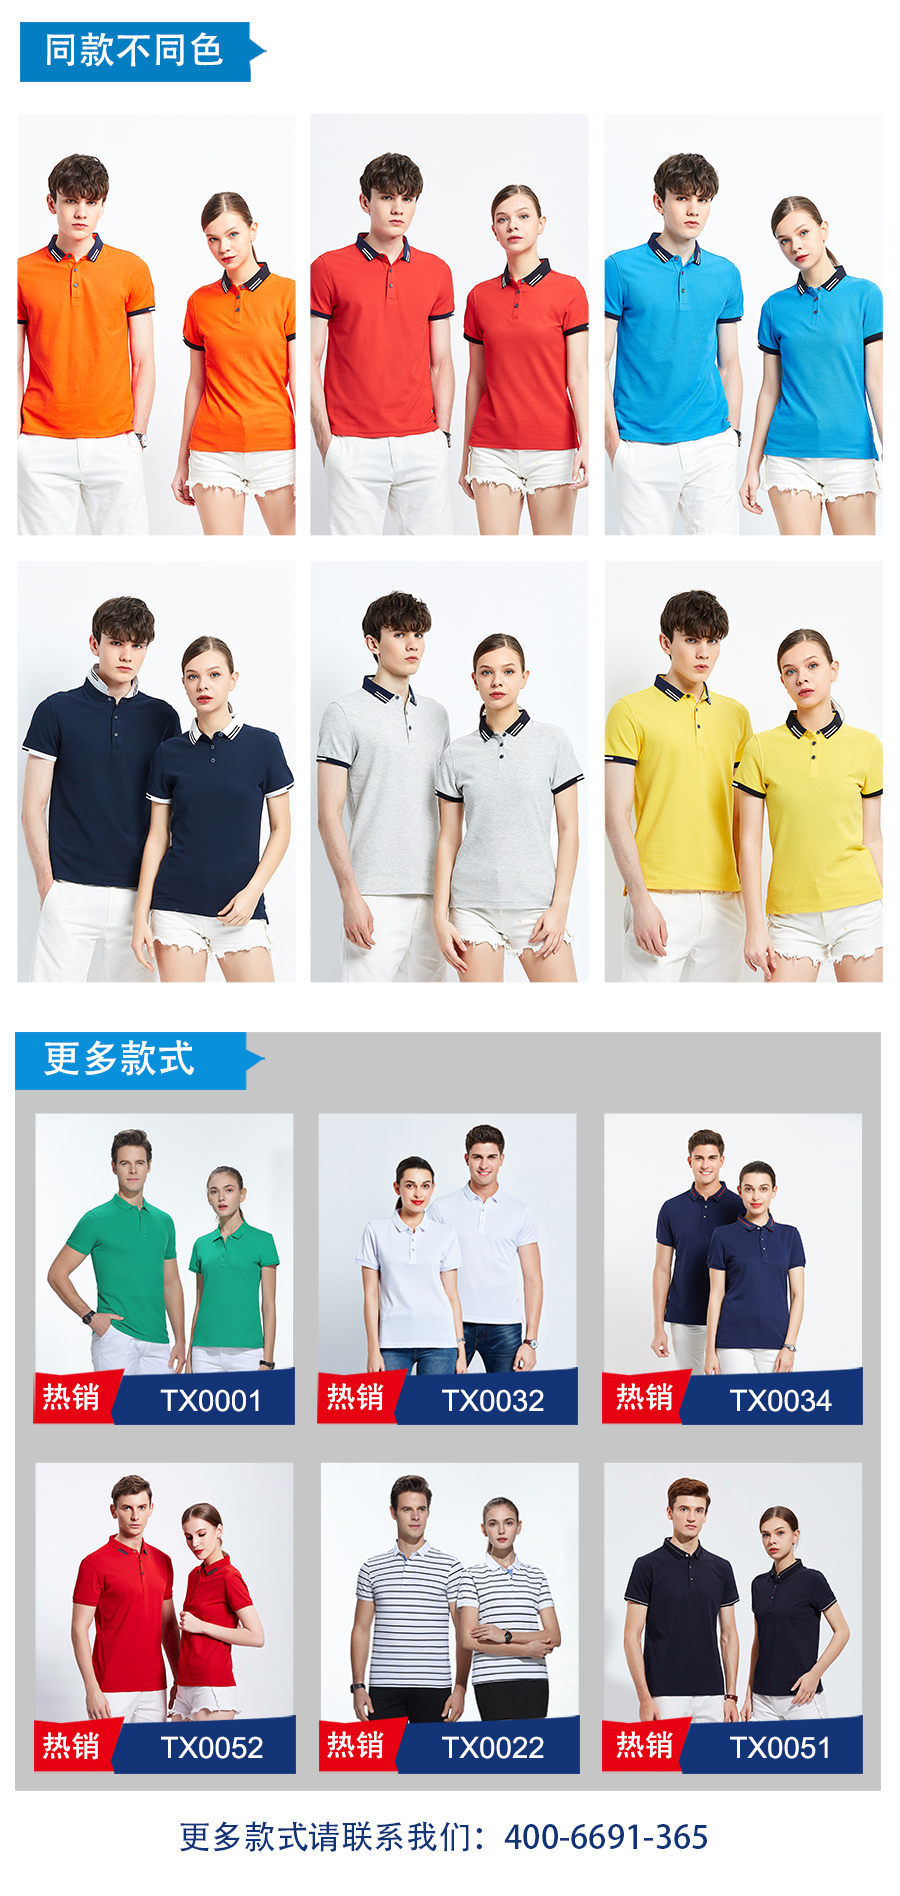 企业文化衫同款不同色.jpg